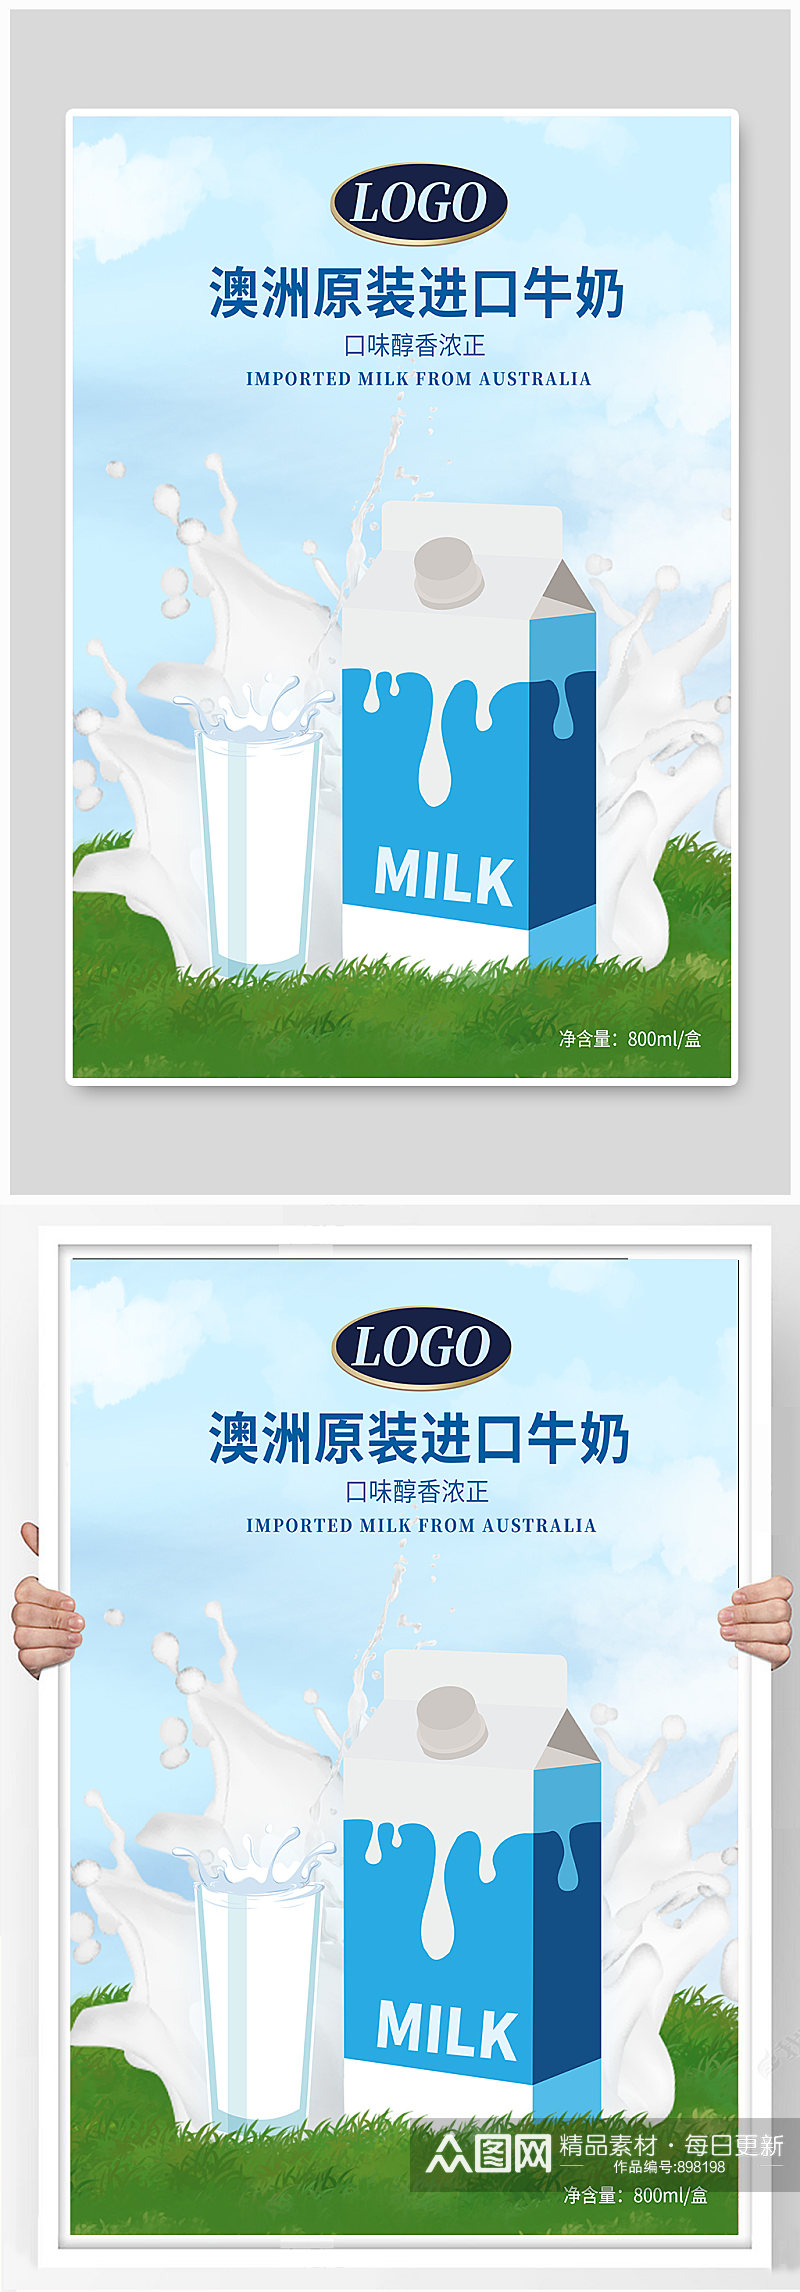 进口牛奶宣传海报素材